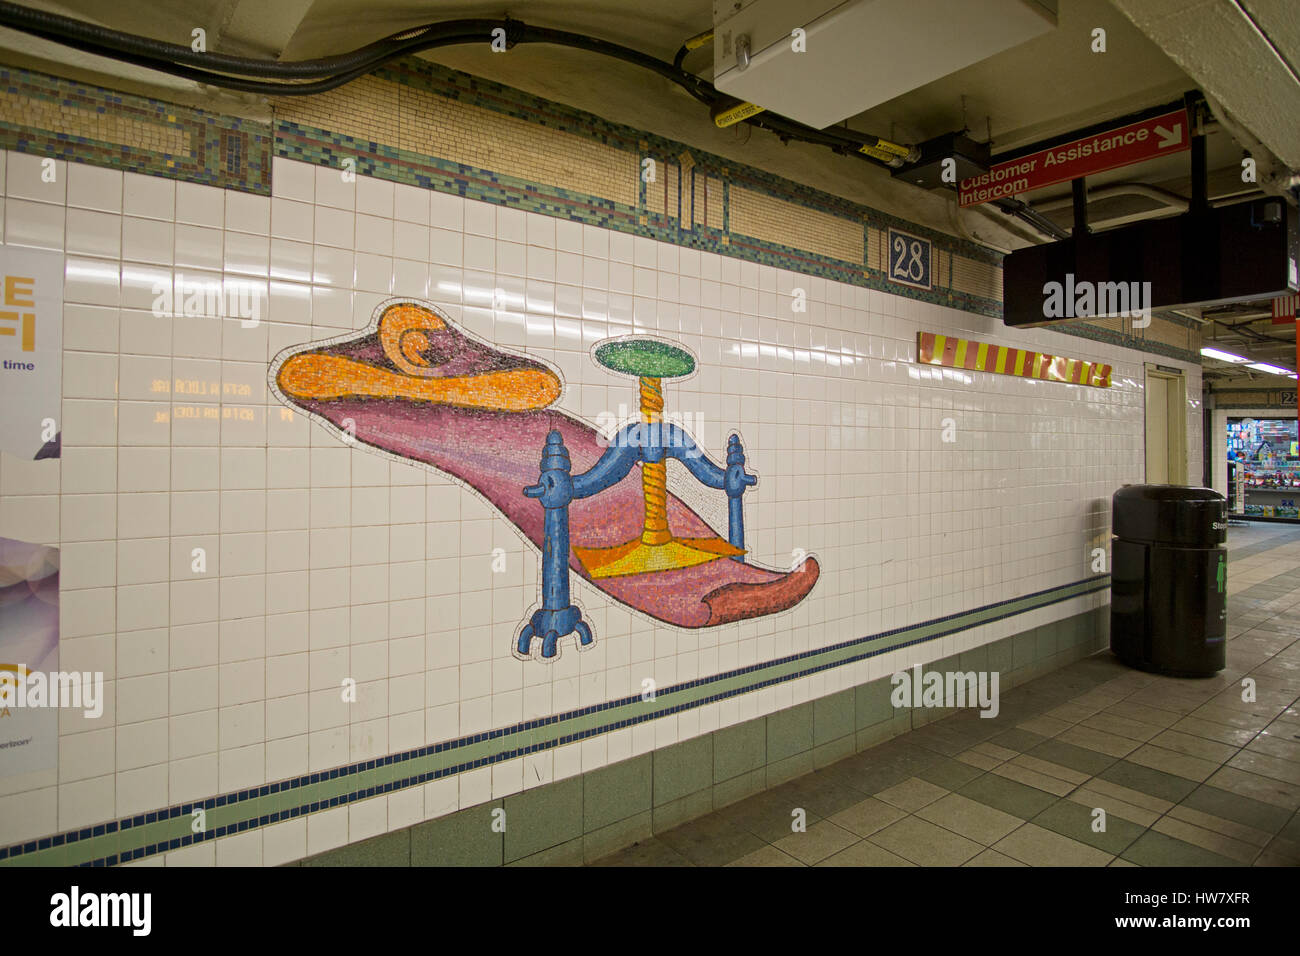 U-Bahn-Kunst auf der Plattform des 28th Street stop auf der N-Linie u-Bahn in The Herlad Square Abschnitt von Manhattan, New York City. Stockfoto